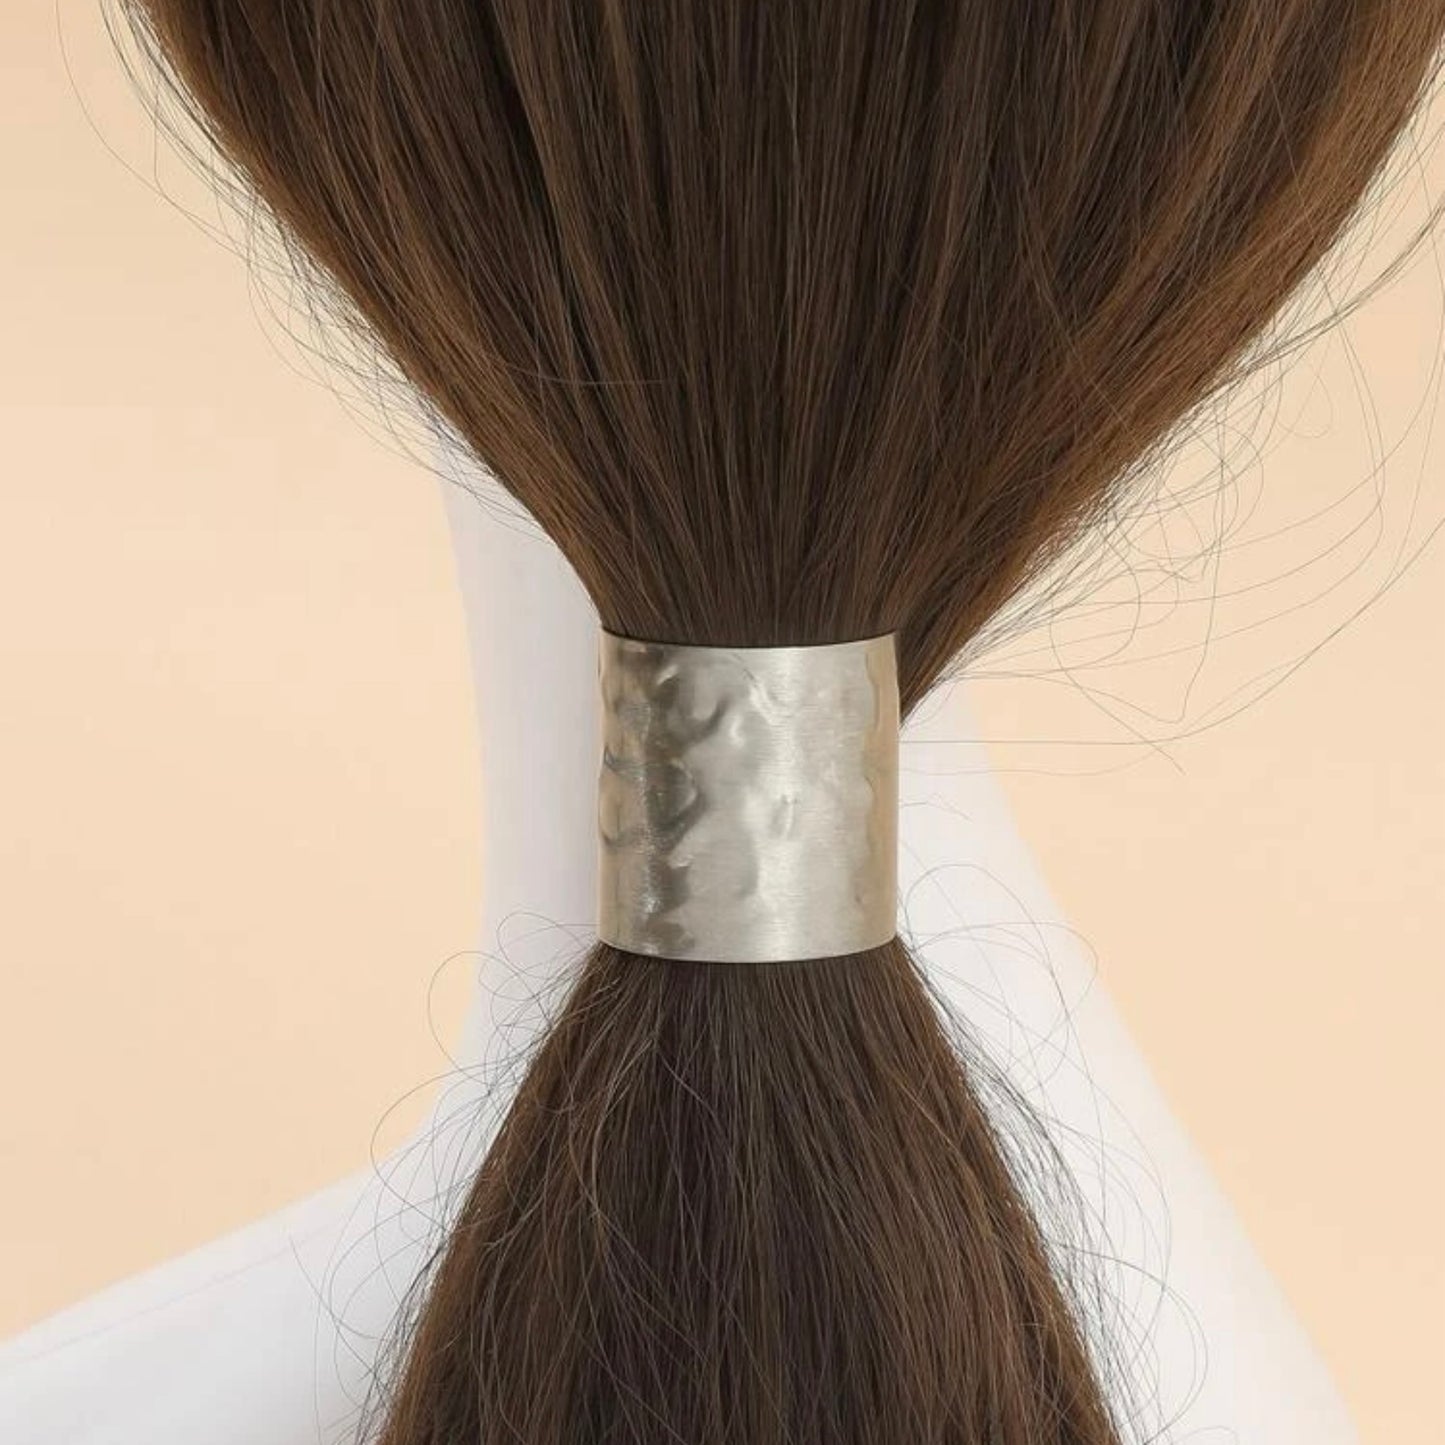 Decor hair clips